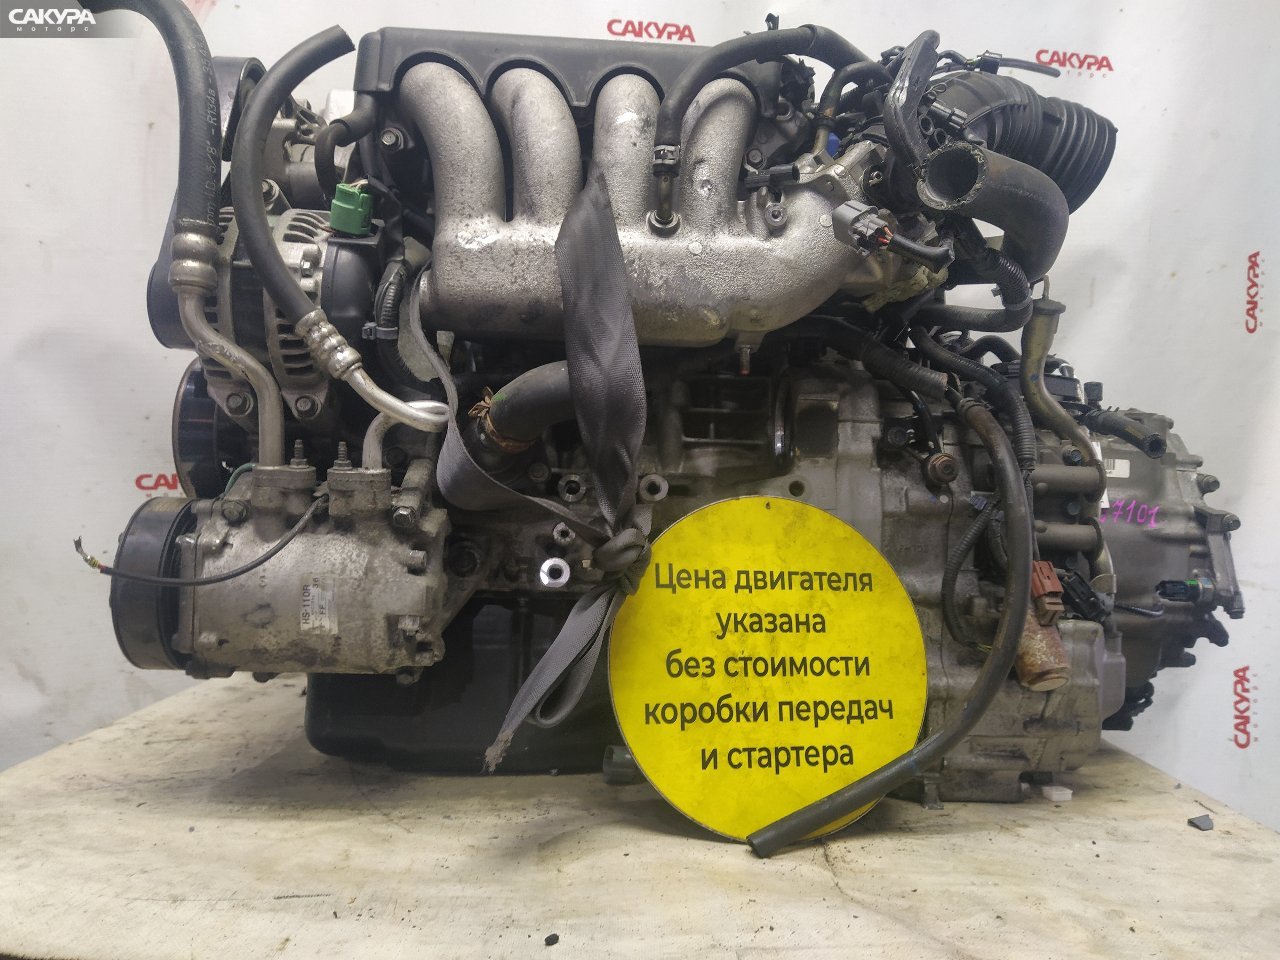 Двигатель Honda Accord CL7 K20A: купить в Сакура Красноярск.